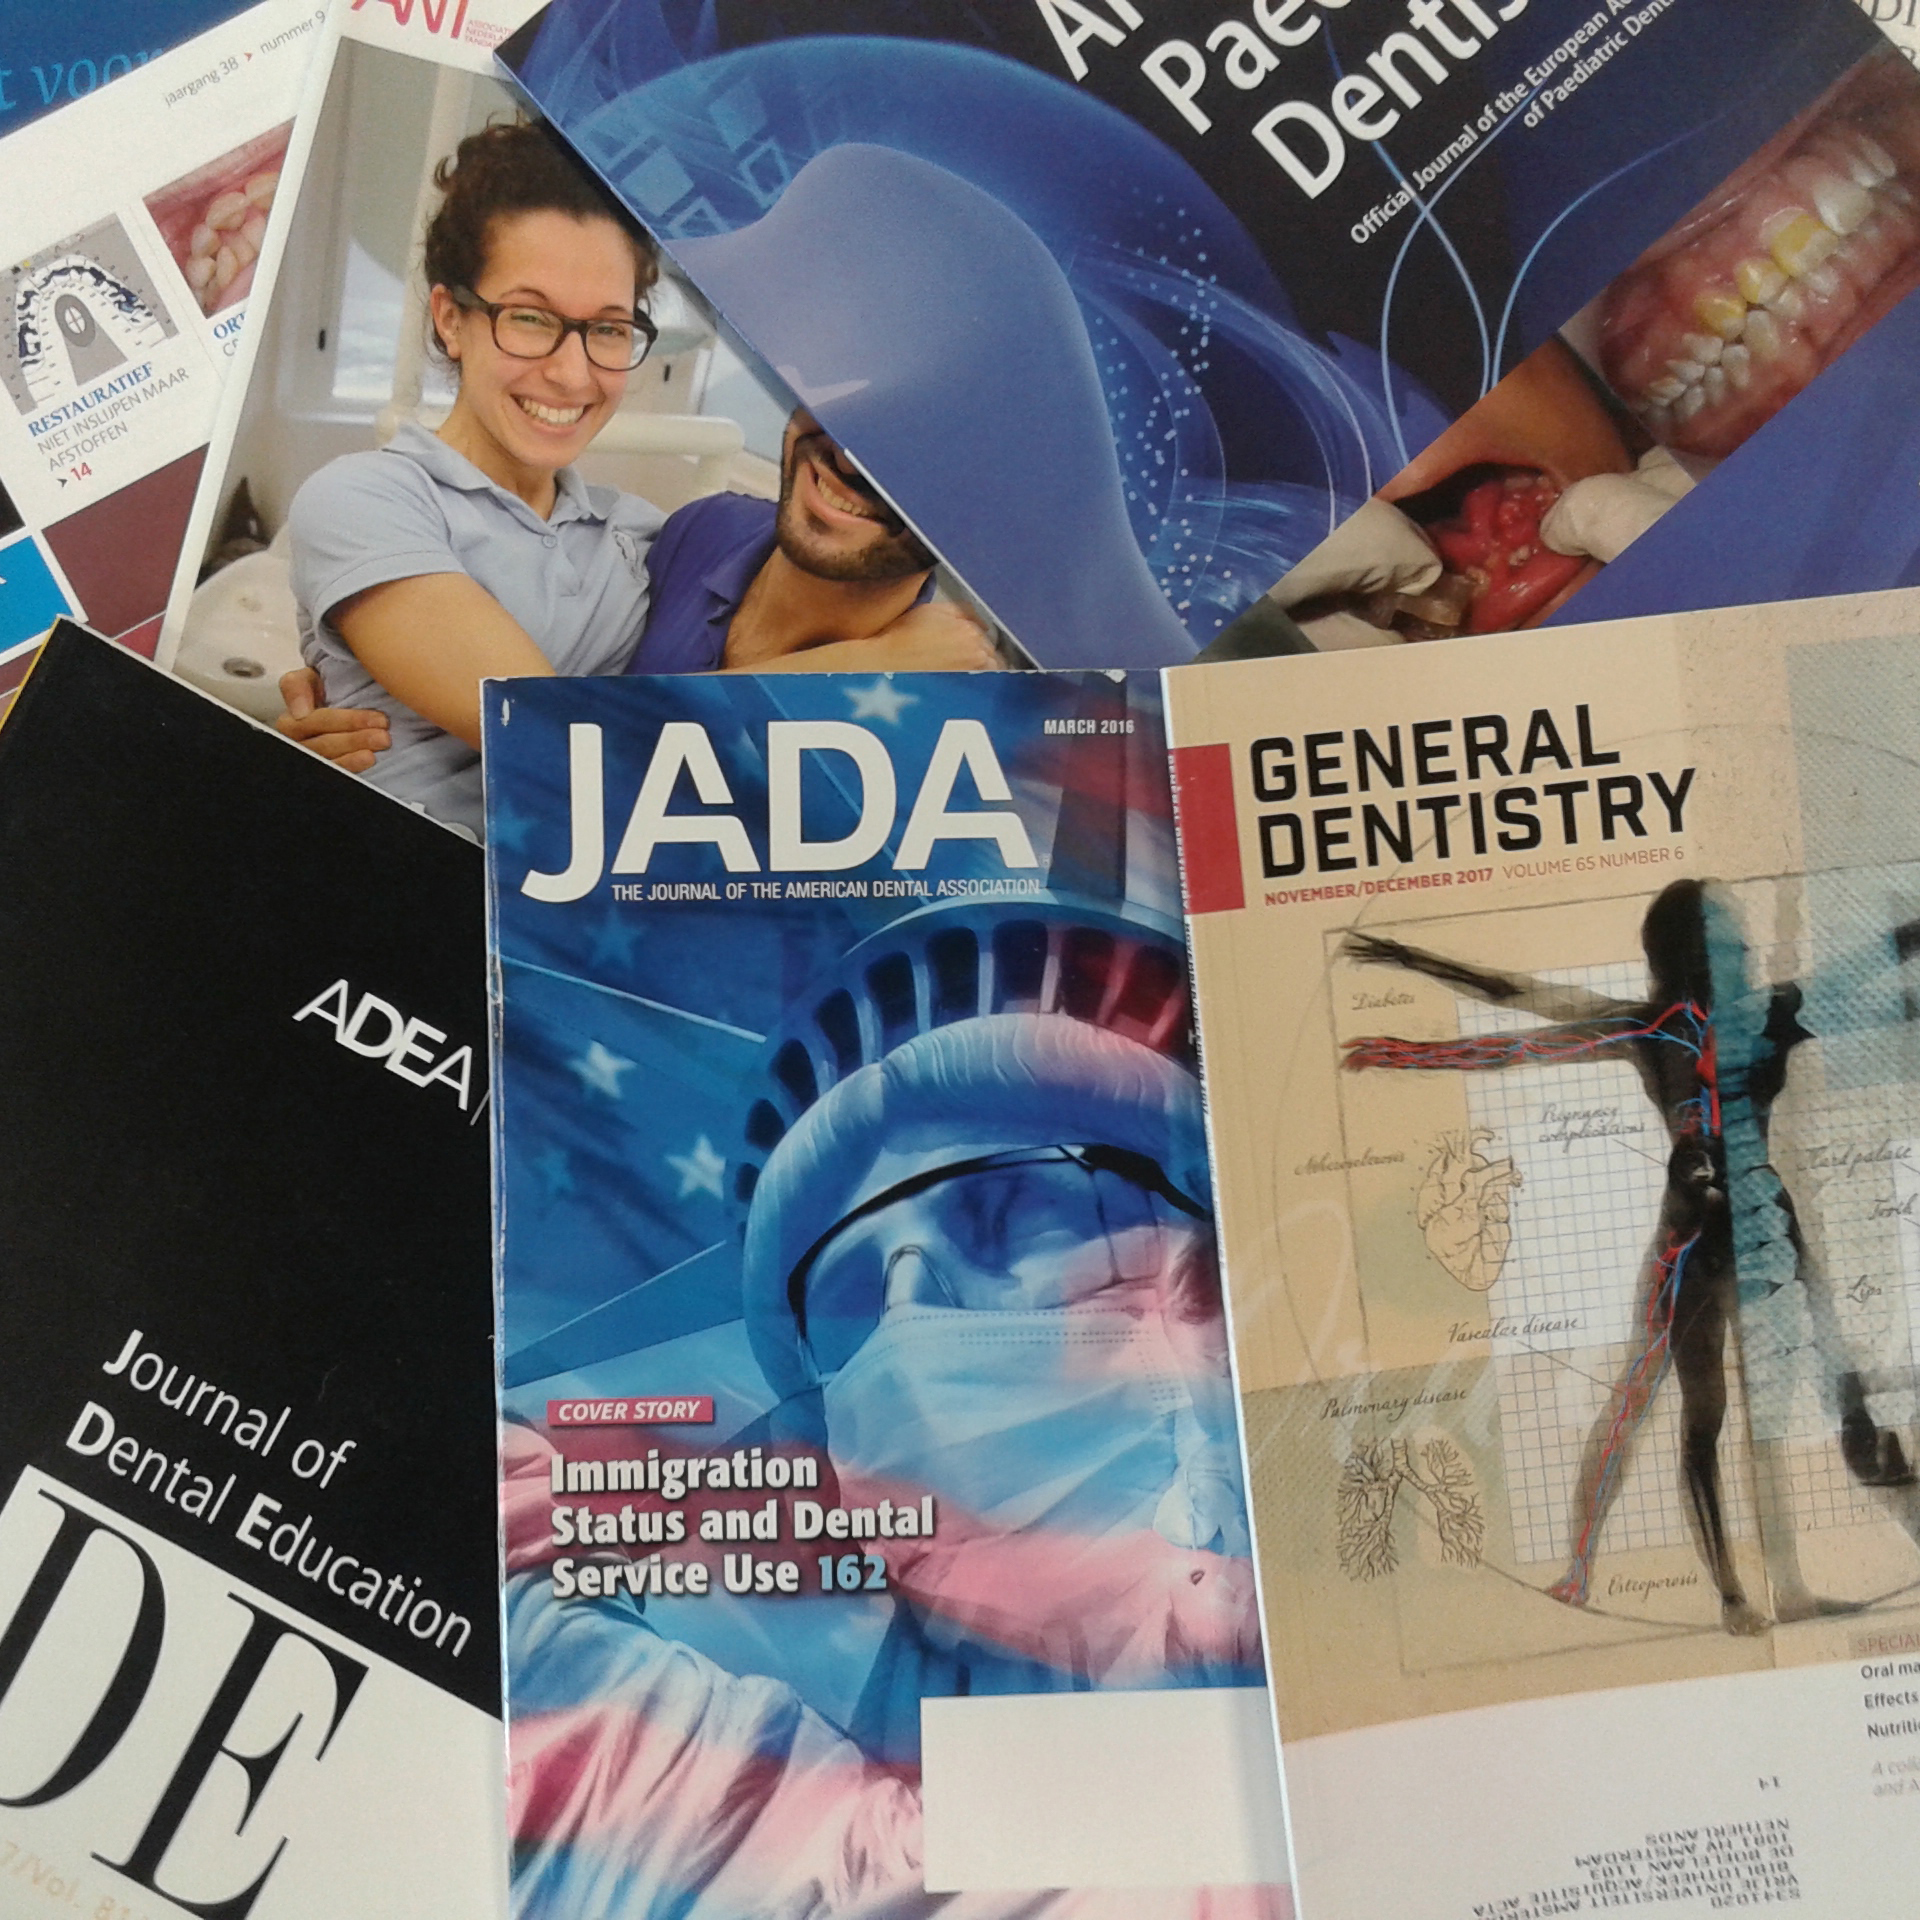 Gebruik van wetenschappelijke tijdschriften en vakbladen door tandheelkundestudenten in Nederland